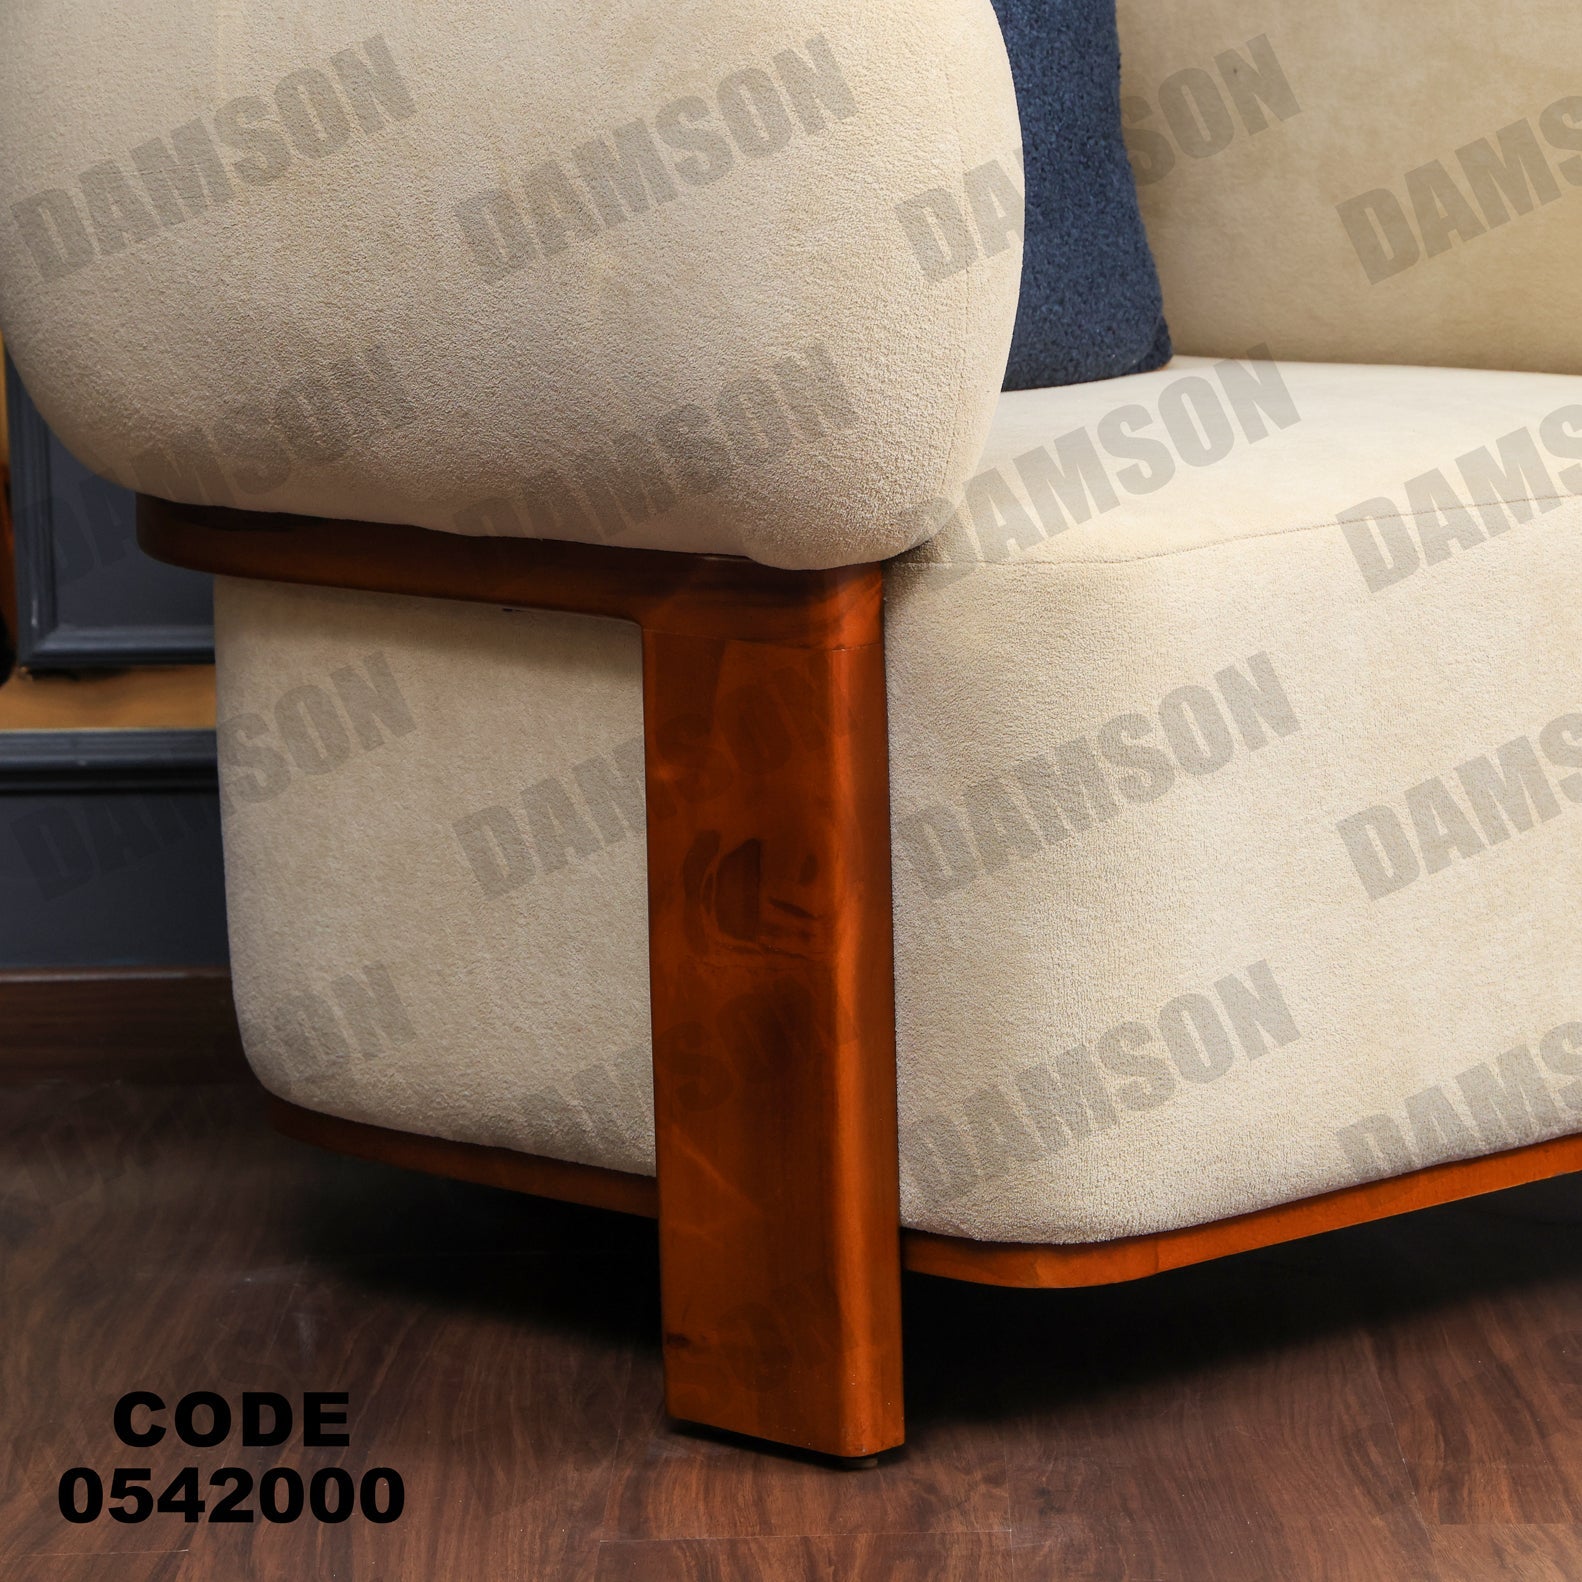 فوتية 1-420 - Damson Furnitureفوتية 1-420